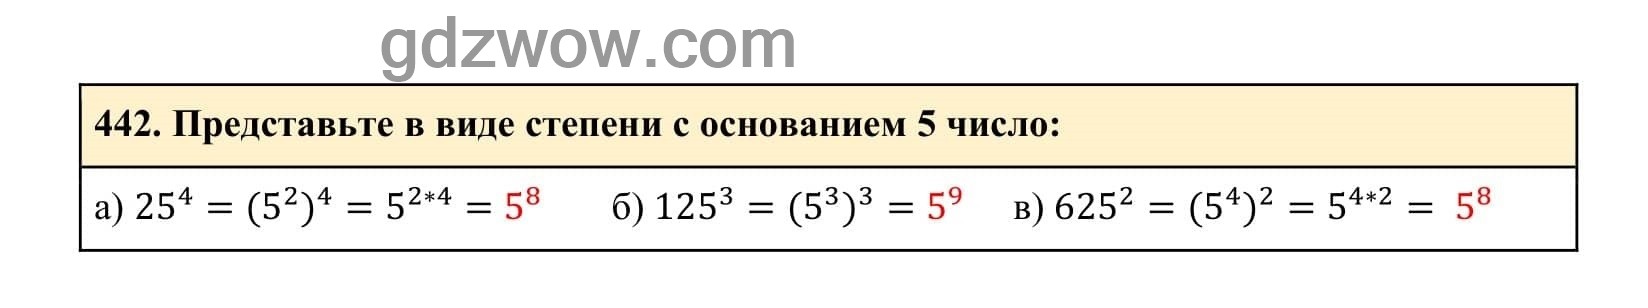 Упражнение 442 - ГДЗ по Алгебре 7 класс Учебник Макарычев (решебник) - GDZwow